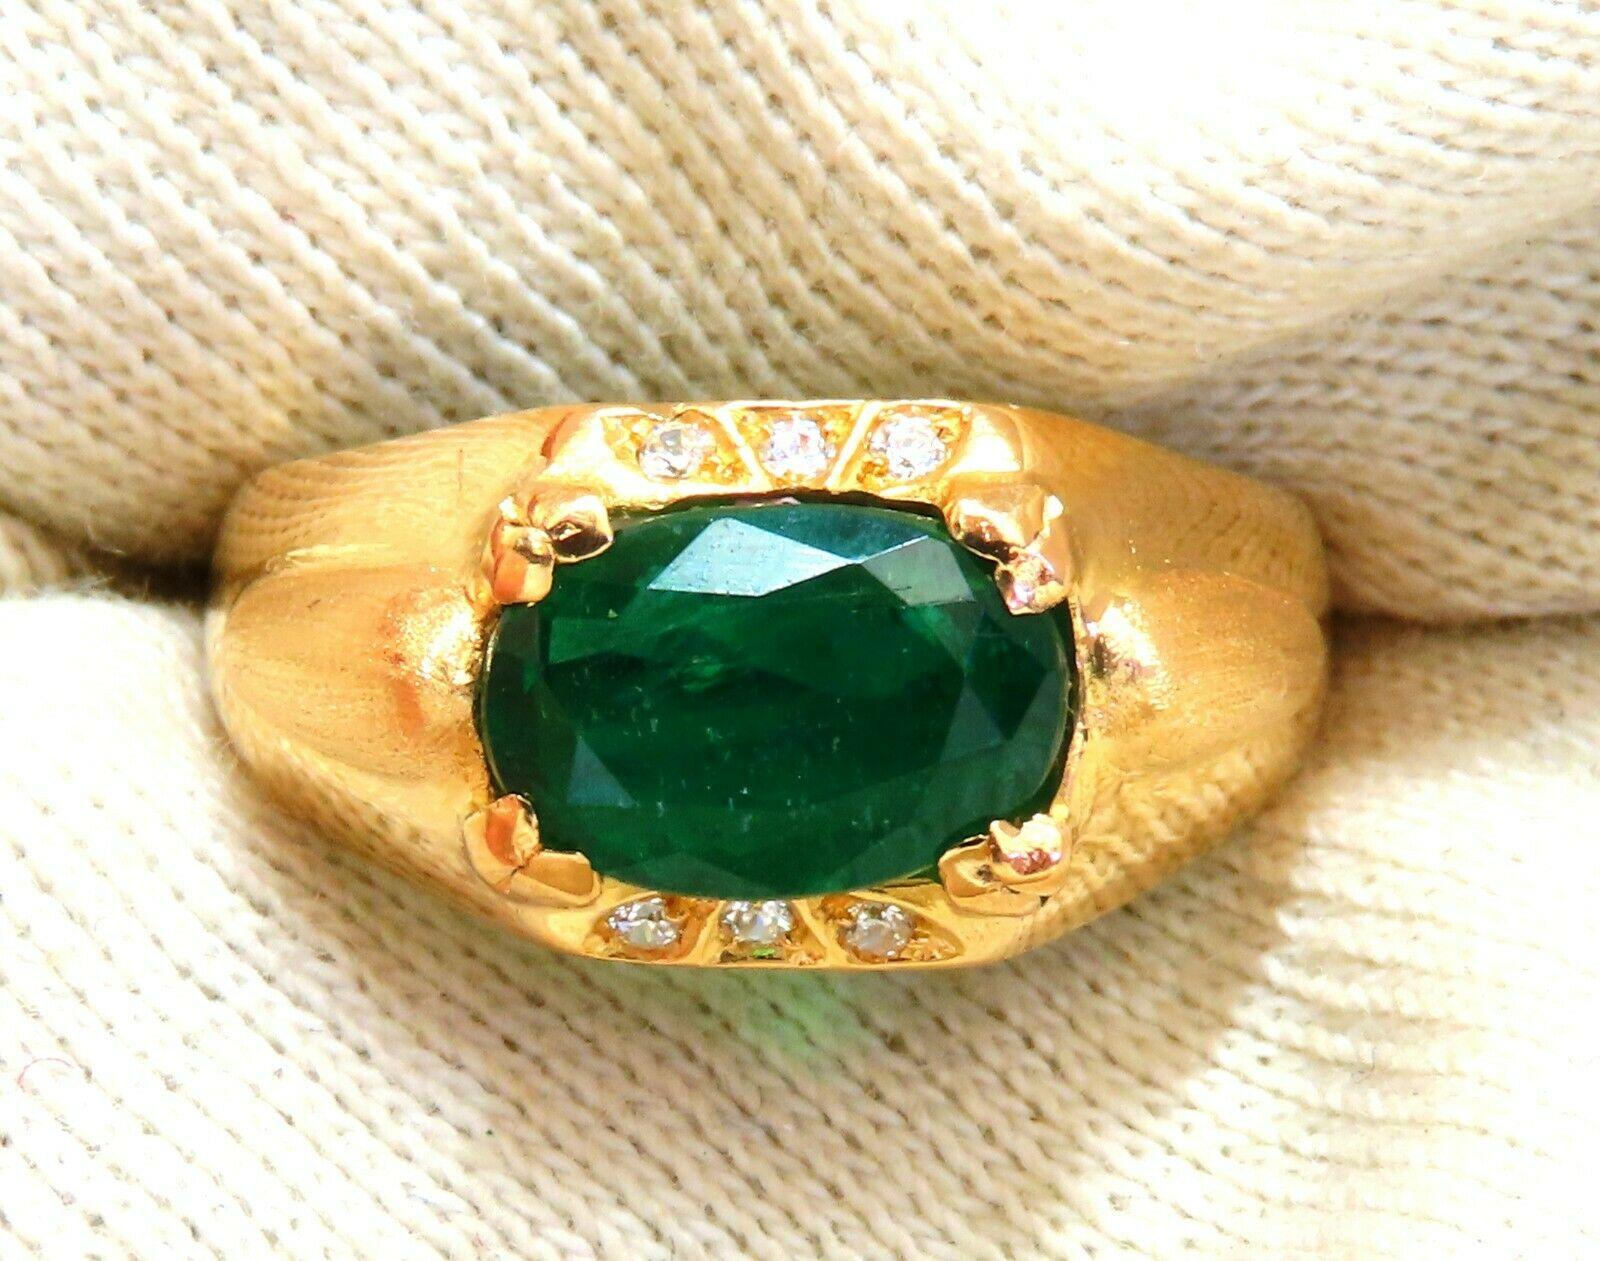 Herrenring mit natürlichem Smaragd.

2.80ct. Natürlicher Ovalschliff, Smaragd Ring

Smaragd: 10 x 7mm 

Transparent & Lebendiges Grün 

.12ct. Diamanten.

Rund- und Vollschnitte 

G-Farbe Vs-2 Klarheit.  

16kt. Gelbgold

6.4 Gramm

Ring Aktuelle